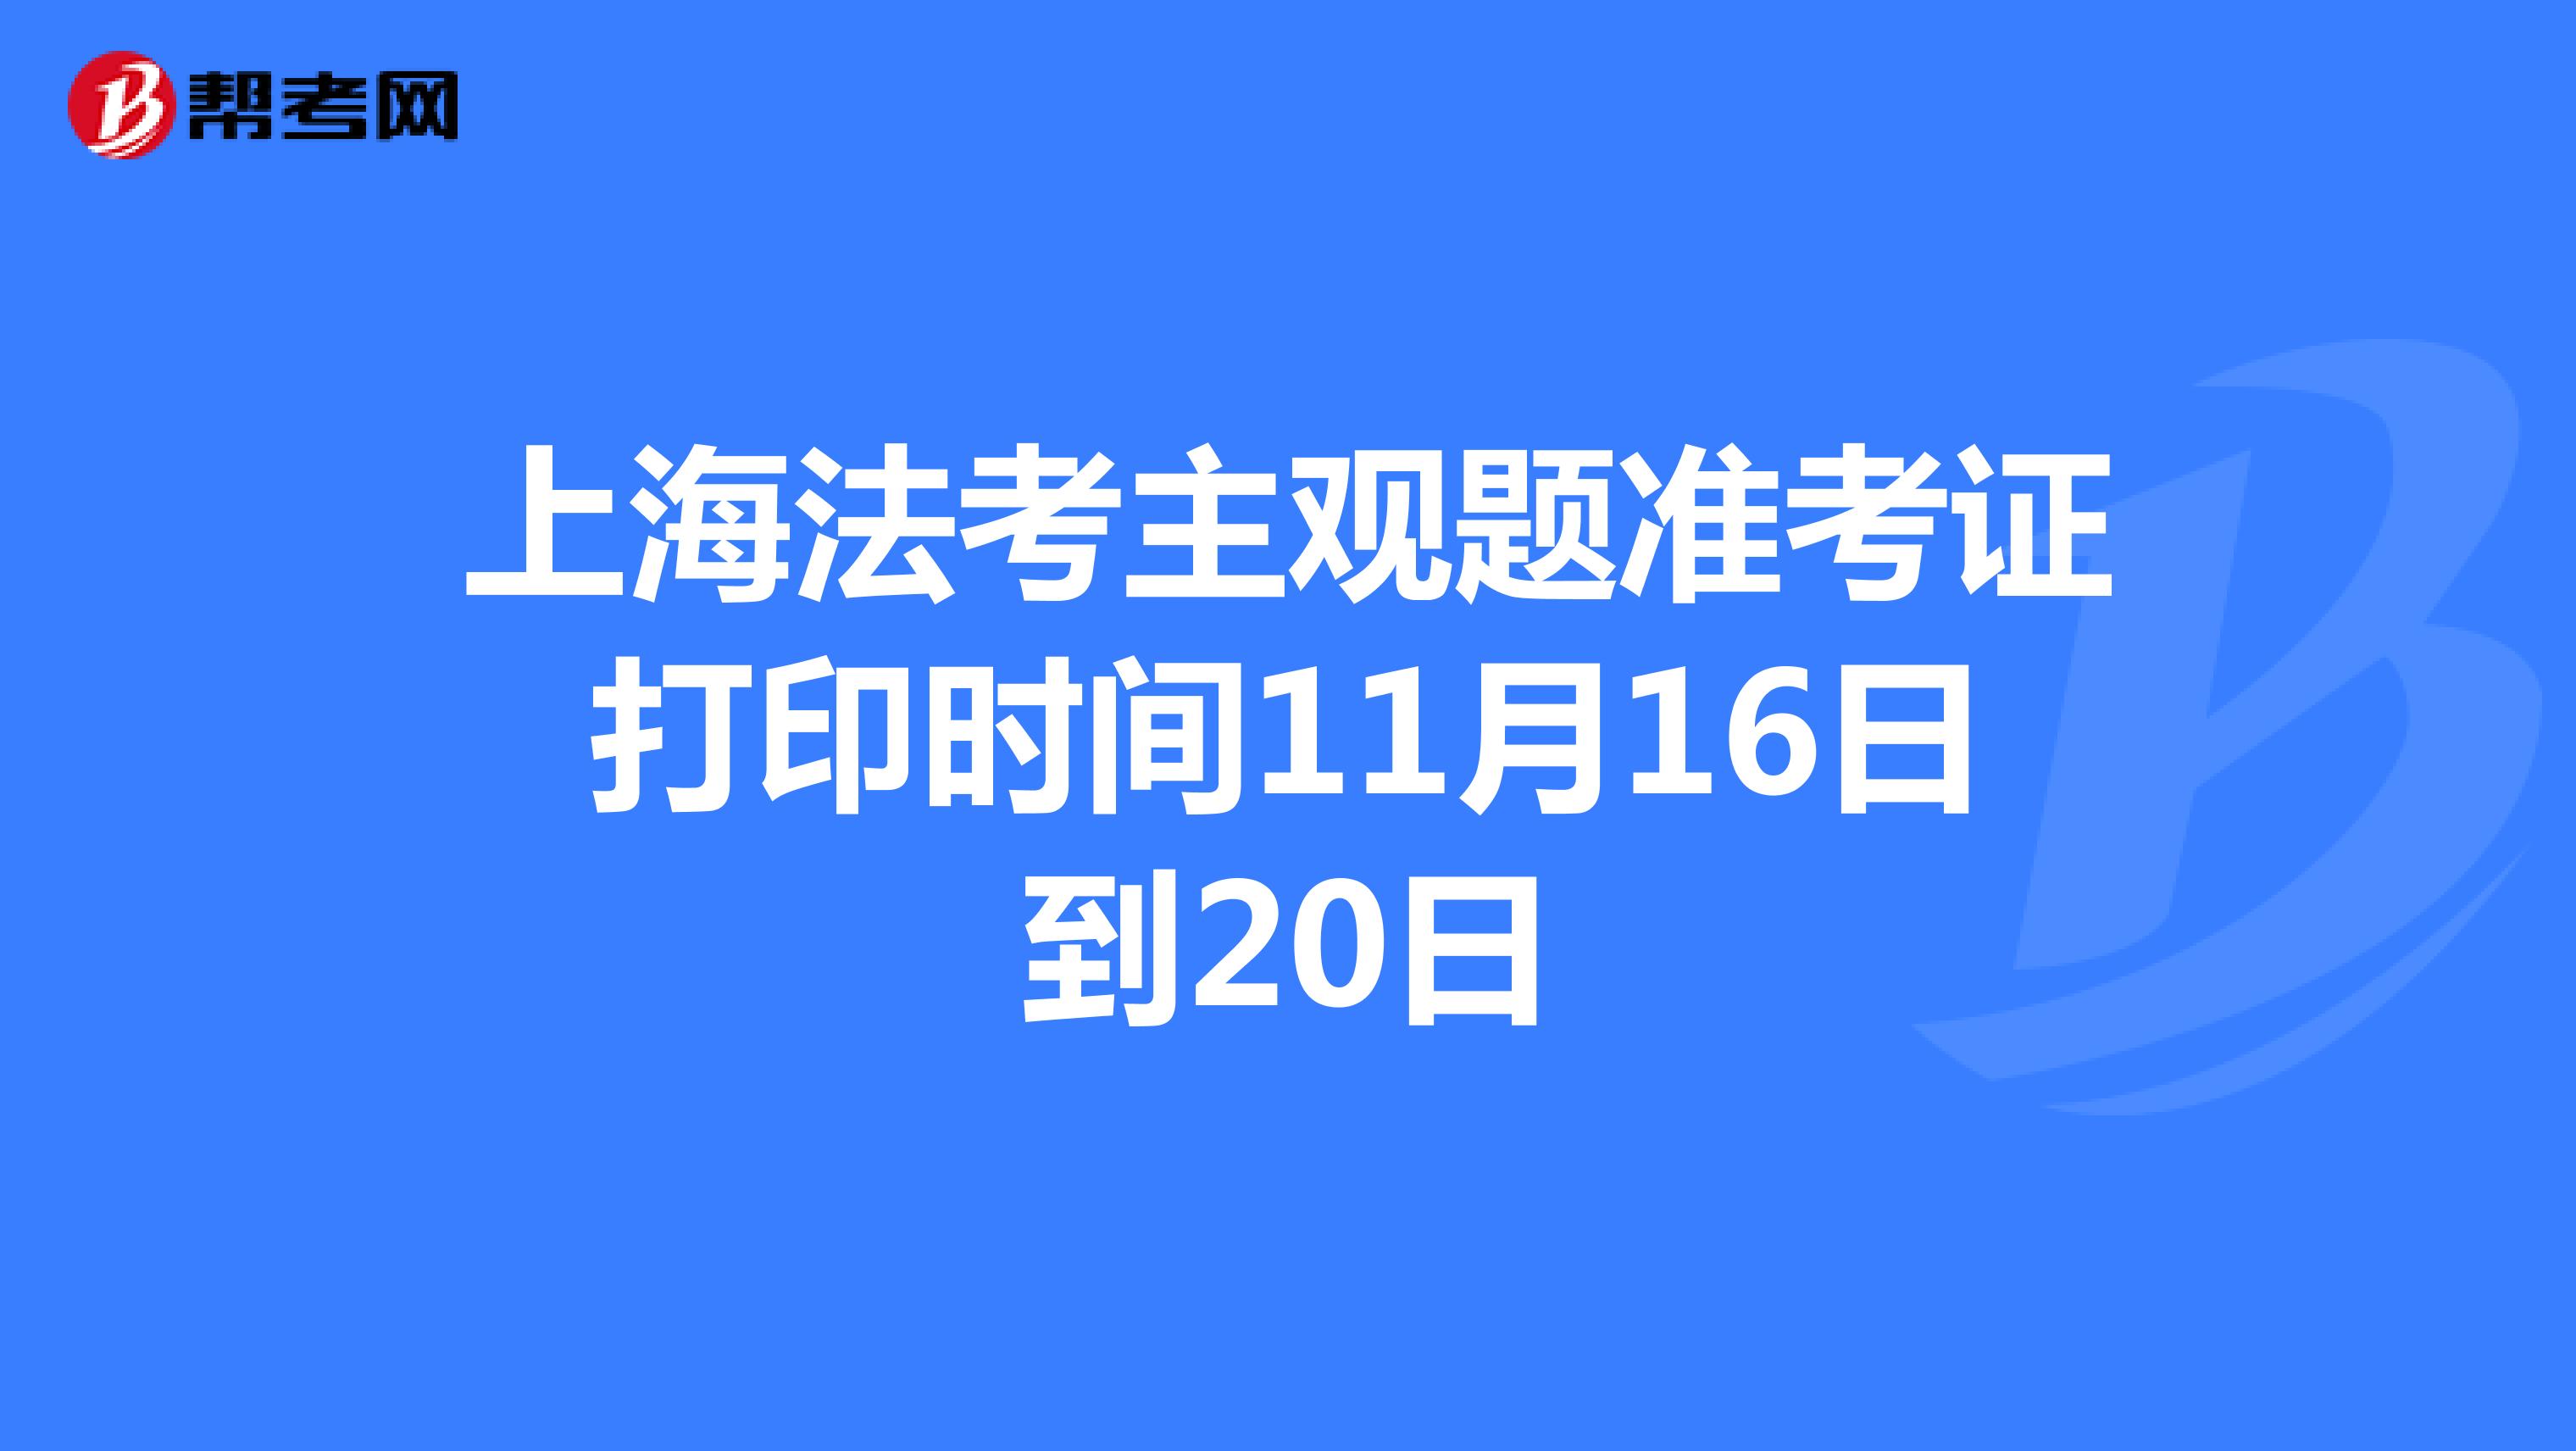 上海法考主观题准考证打印时间11月16日到20日